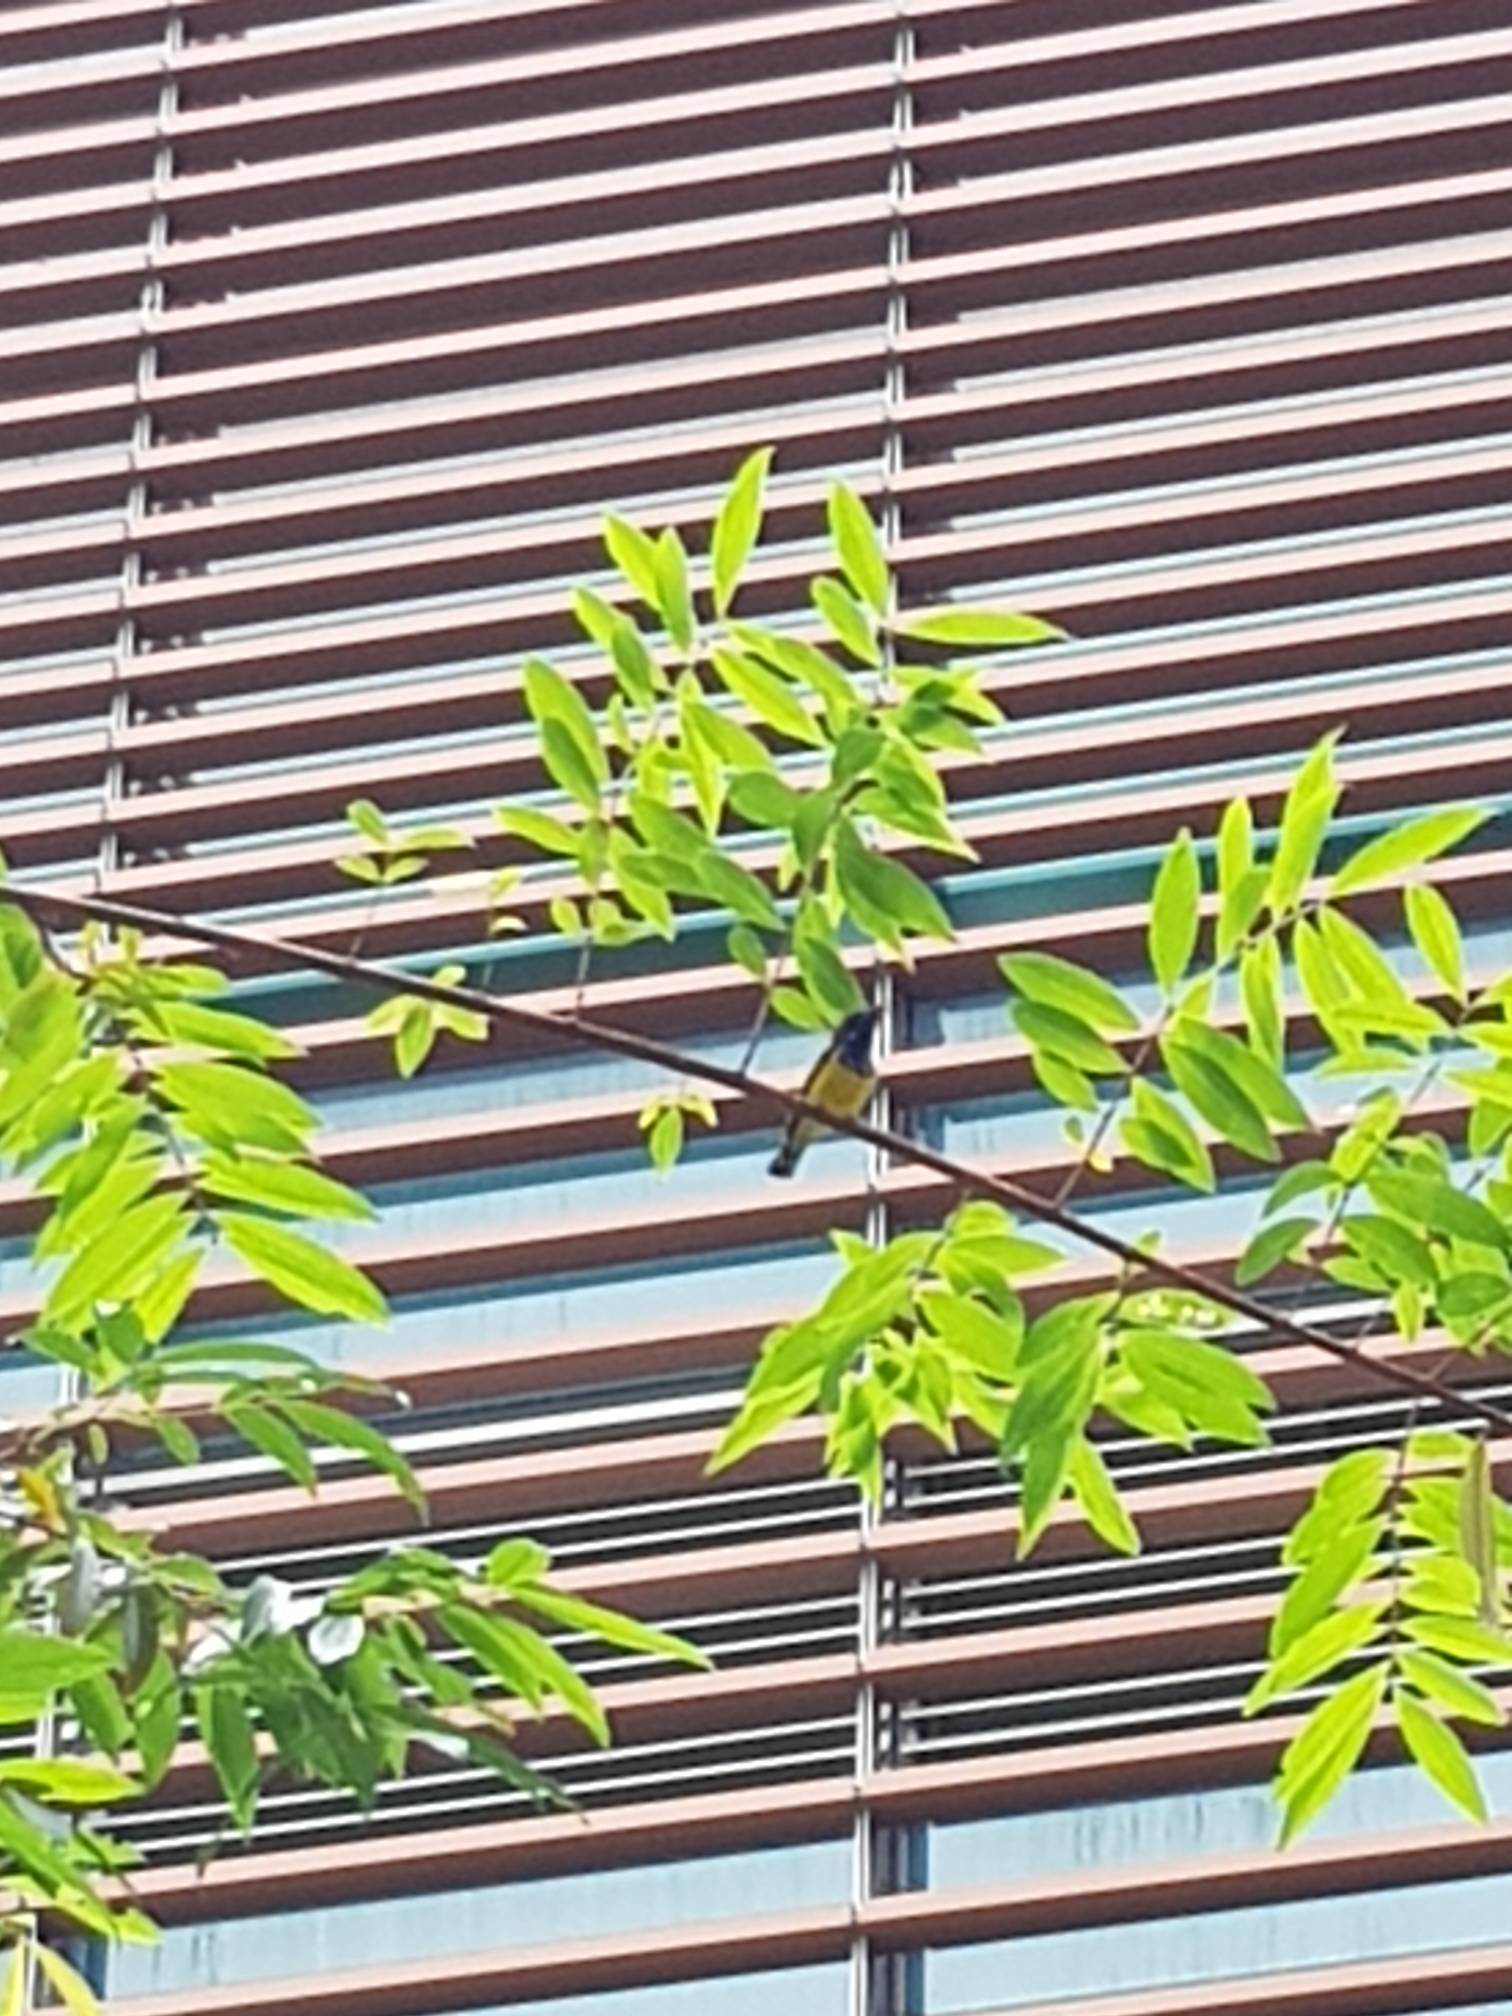 Olive-backed sunbird